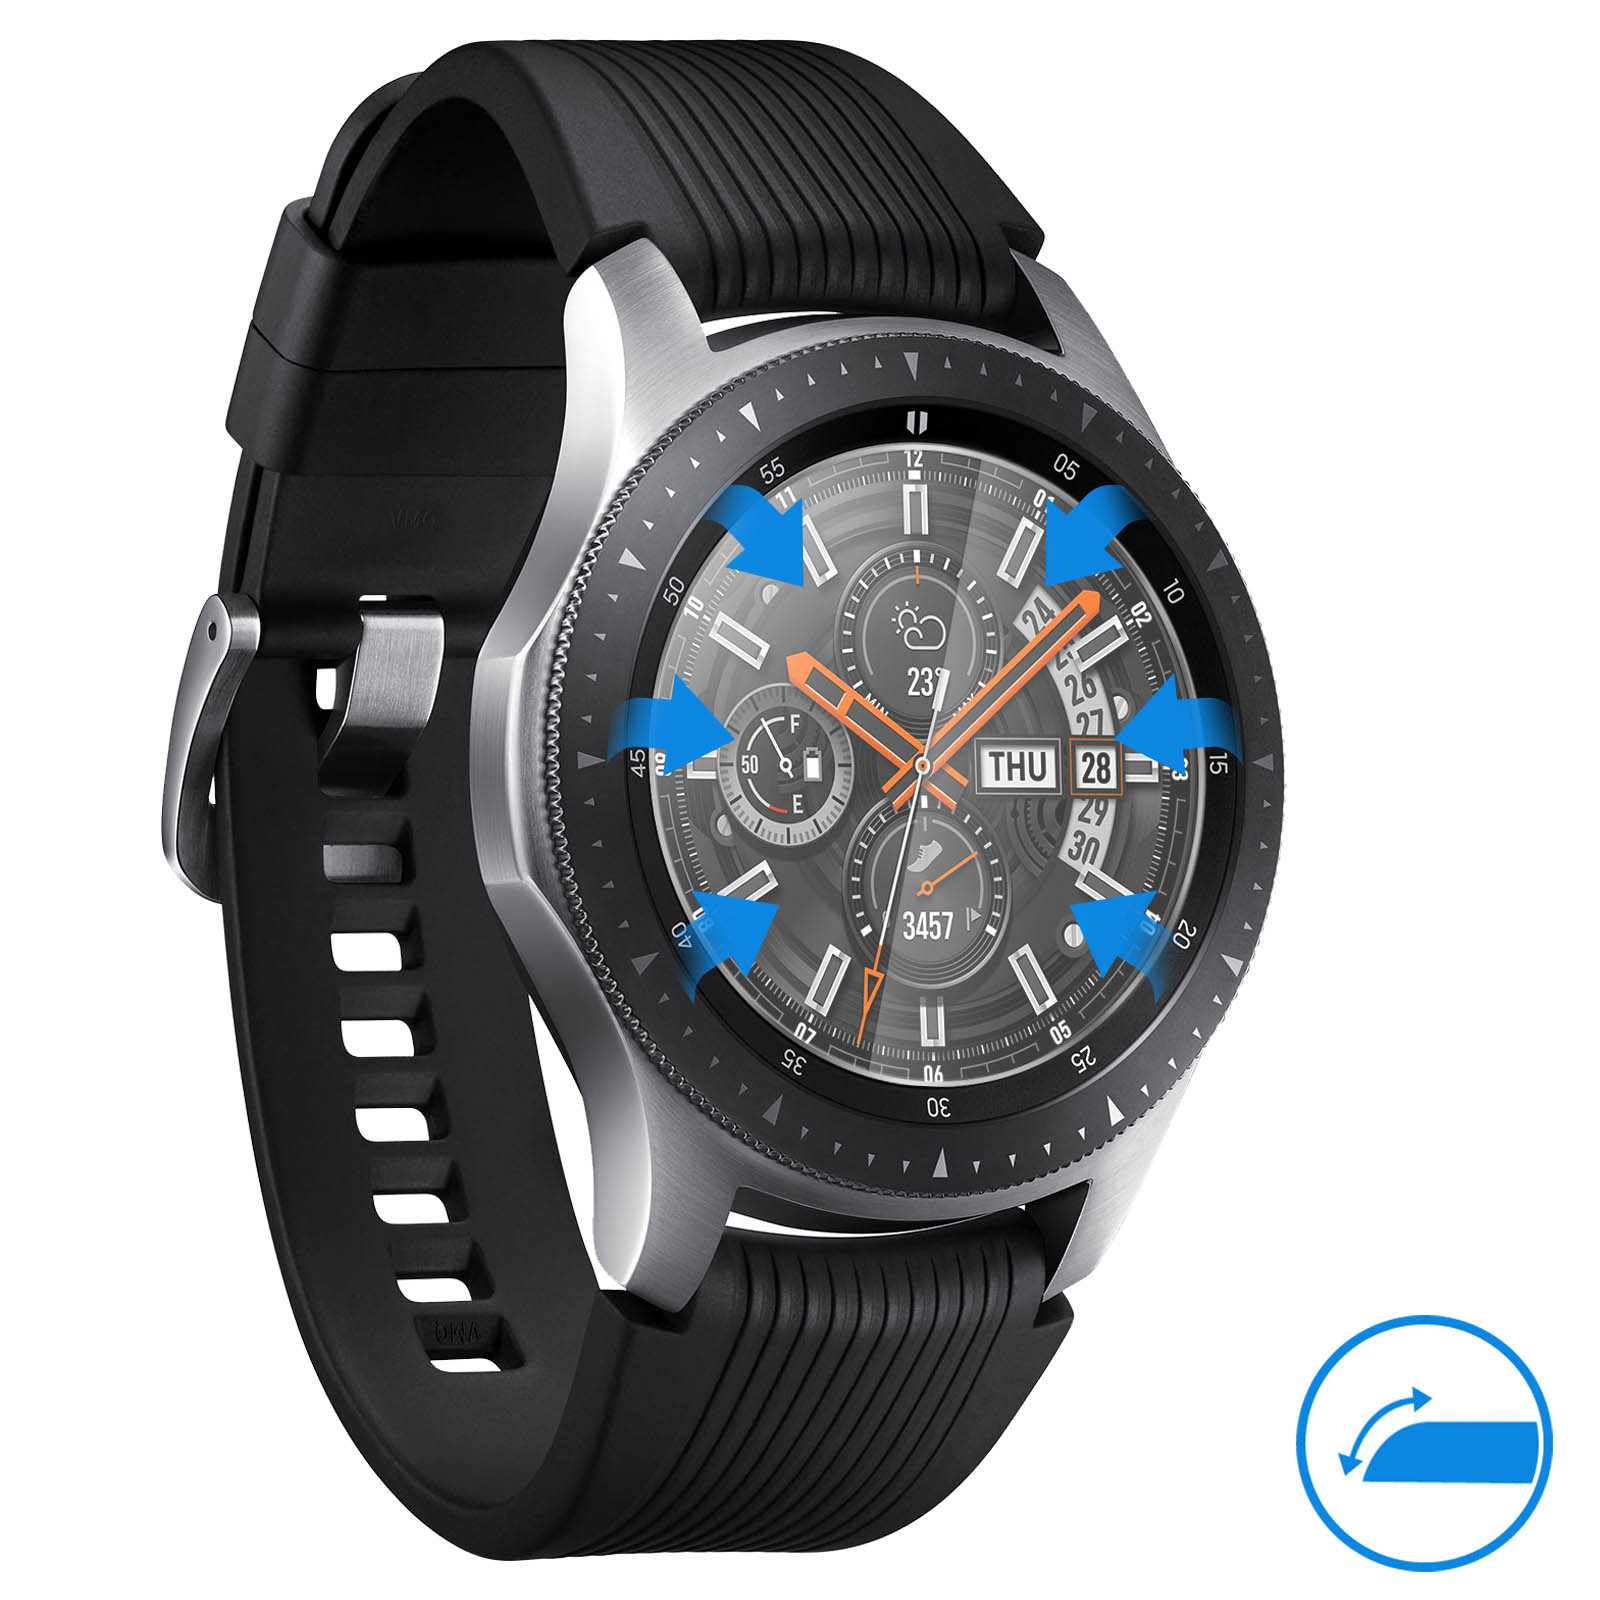 Protector De Pantalla Galaxy Watch 46 Mm Dureza 9h Cristal Templado 0,3mm